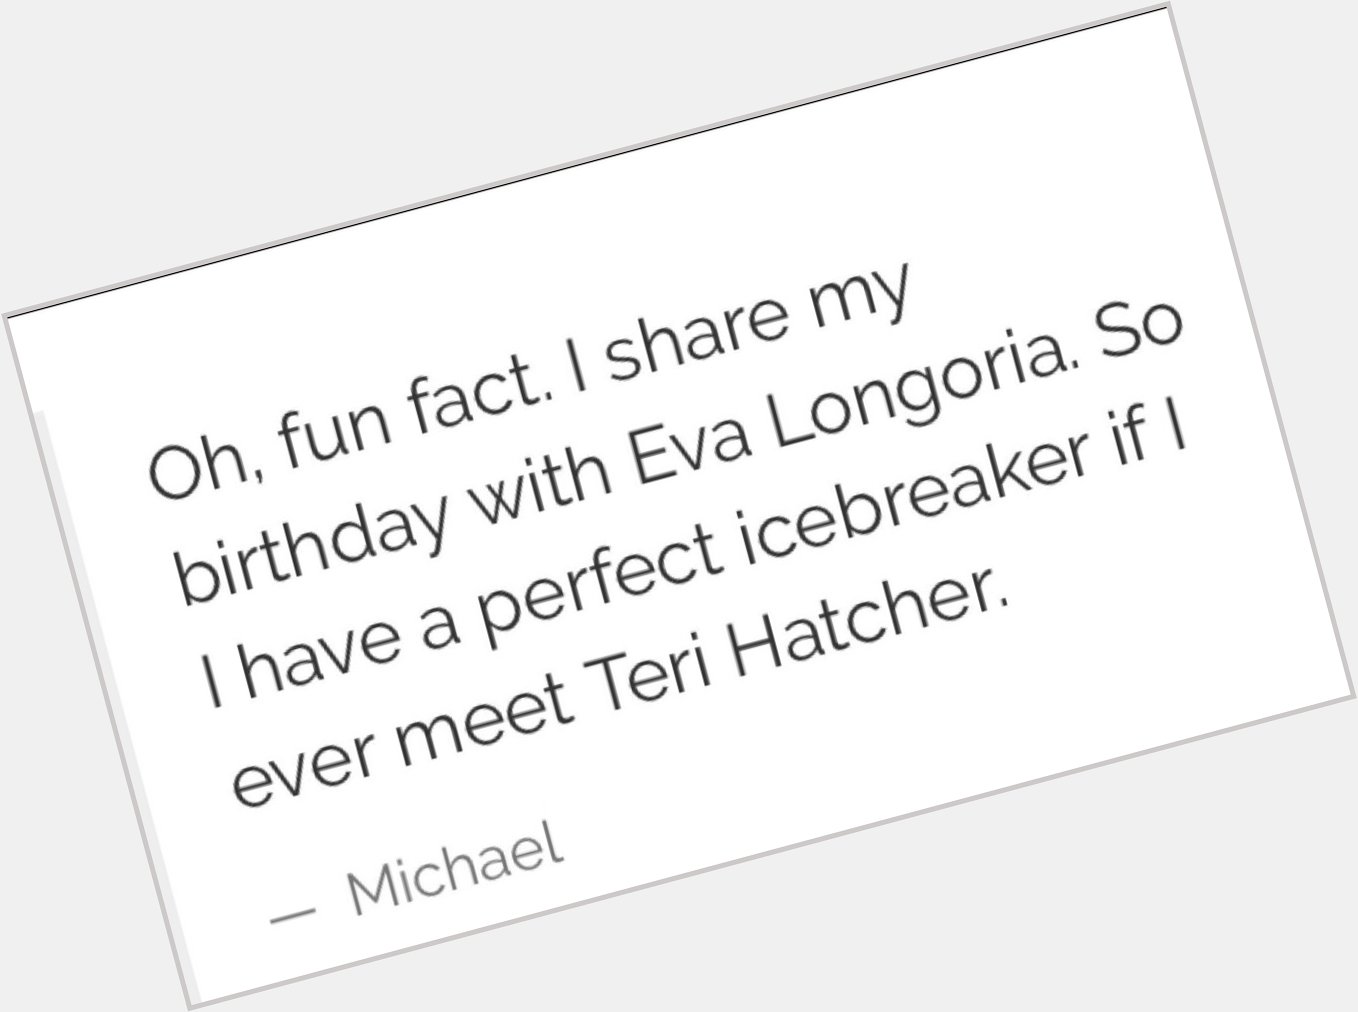 Happy Birthday to Michael Scott and Eva Longoria! 